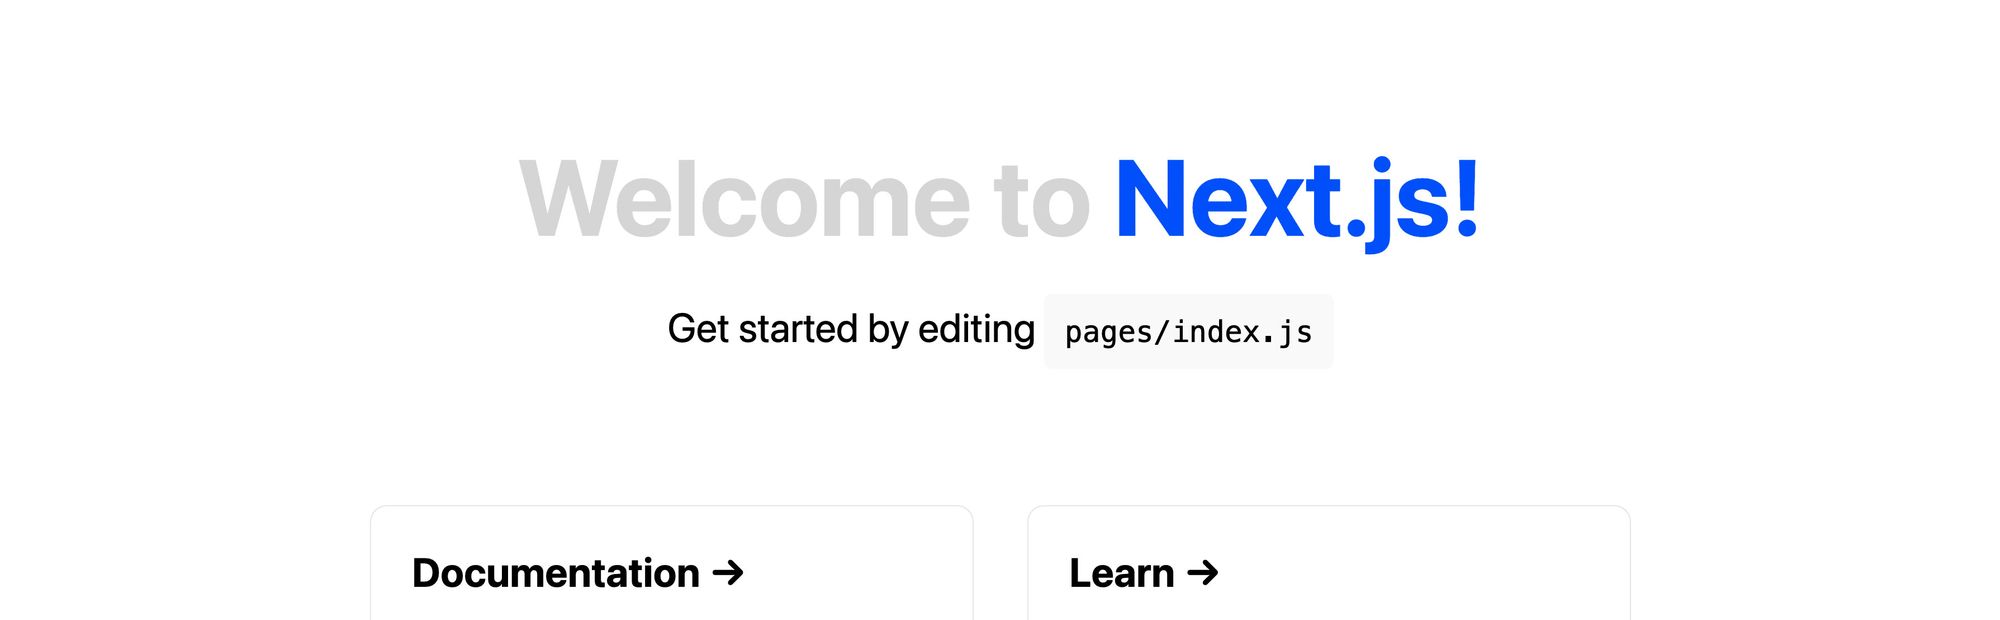 nextjs-app-title-color-change